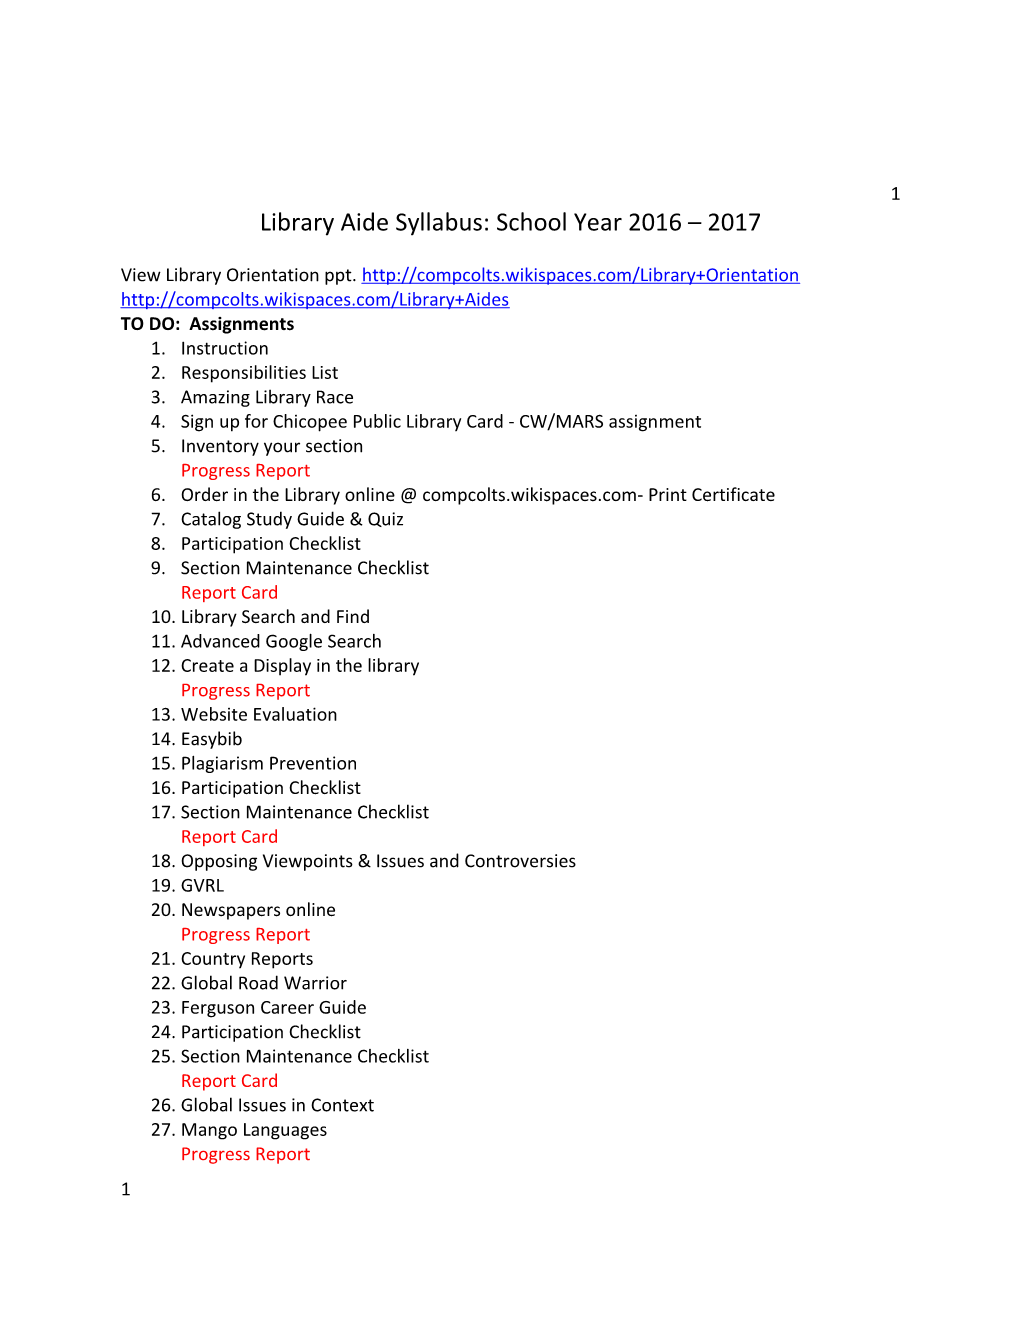 Library Aide Syllabus: School Year 2016 2017